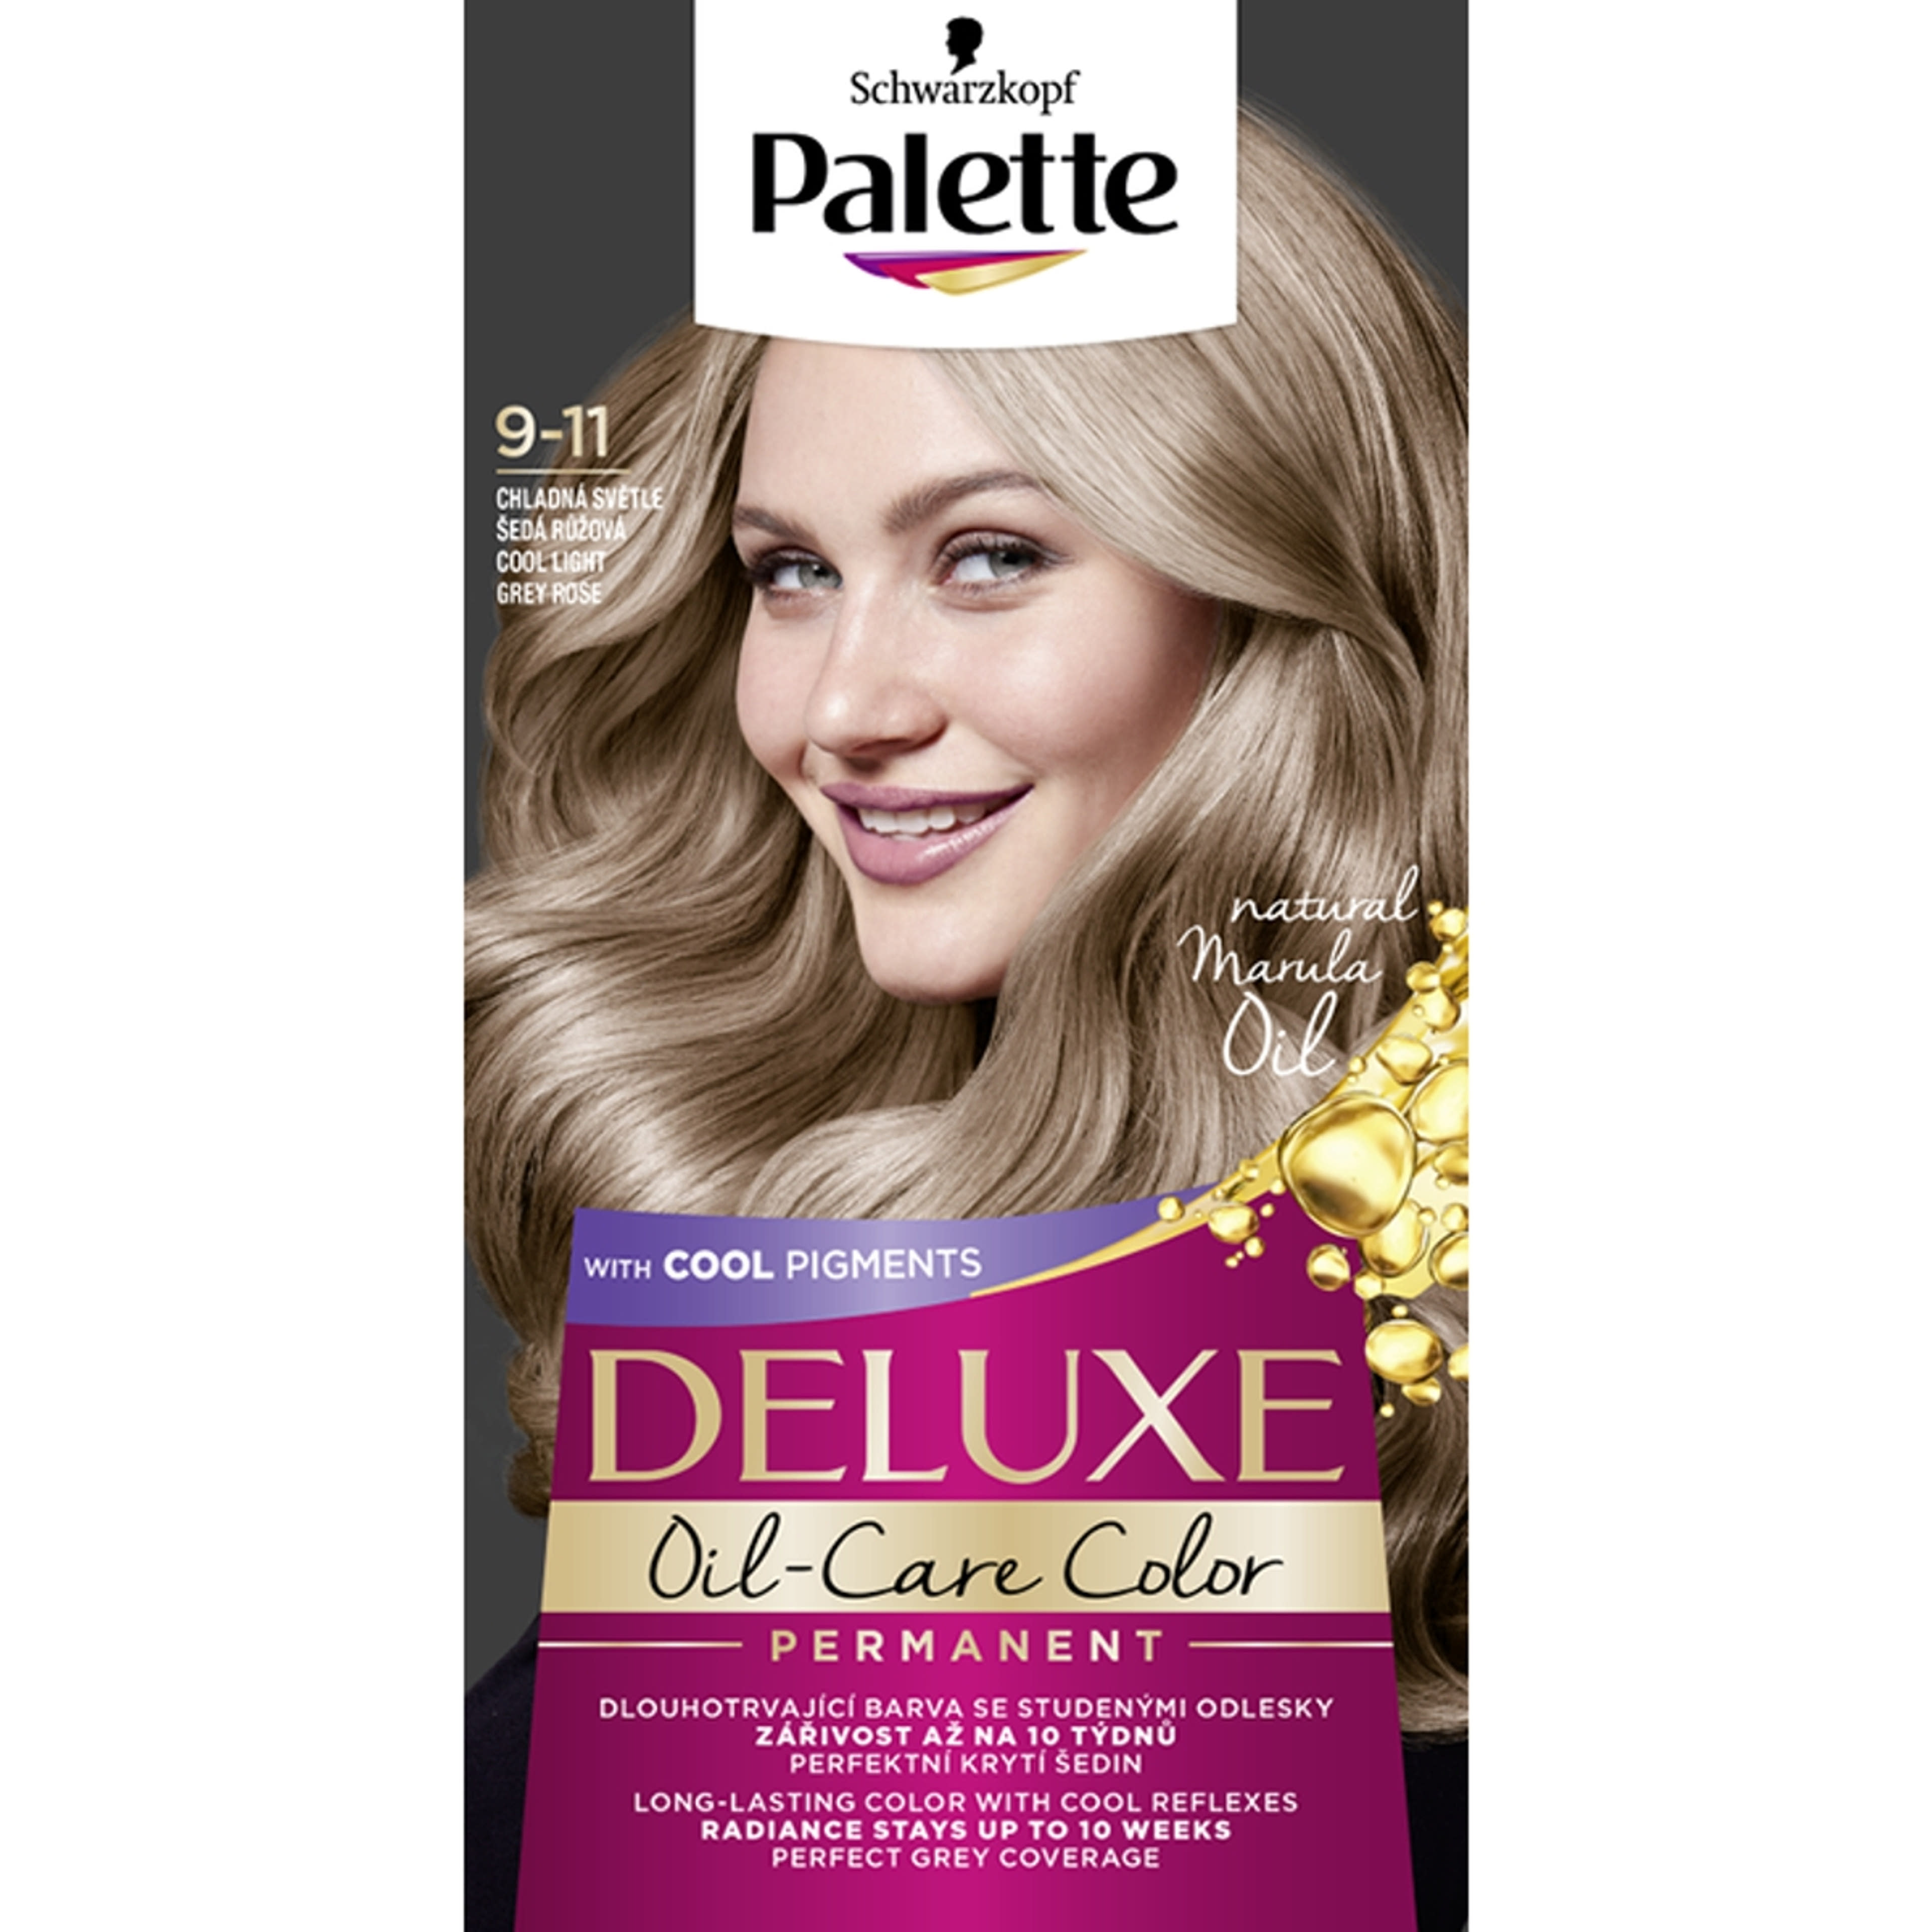 Palette Deluxe tartós hajfesték 9-11 hűvös világosszürke rózsa - 1 db